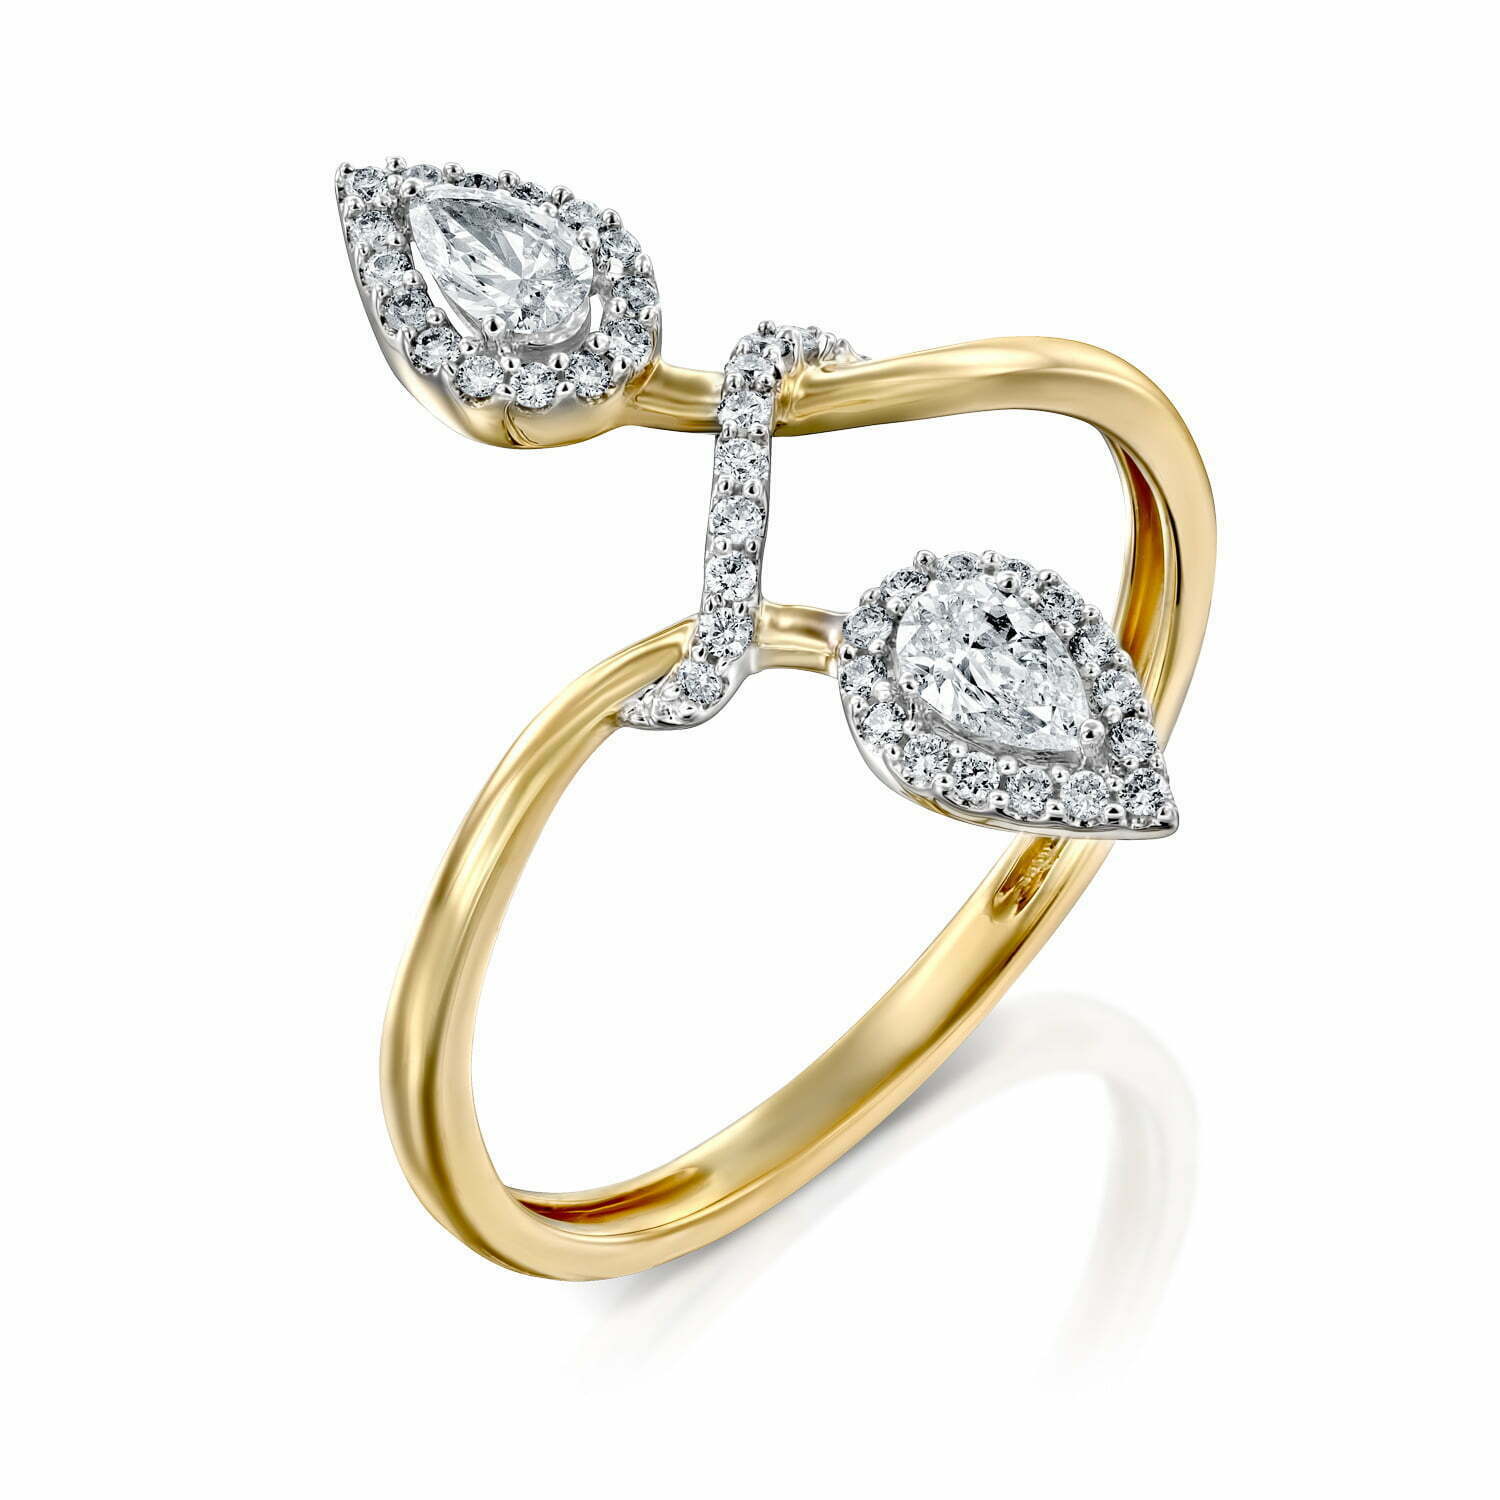 טבעת יהלומים בעיצוב עלה, זהב 14K, משובצת 0.33 קראט יהלומים, דגם RDRF15810